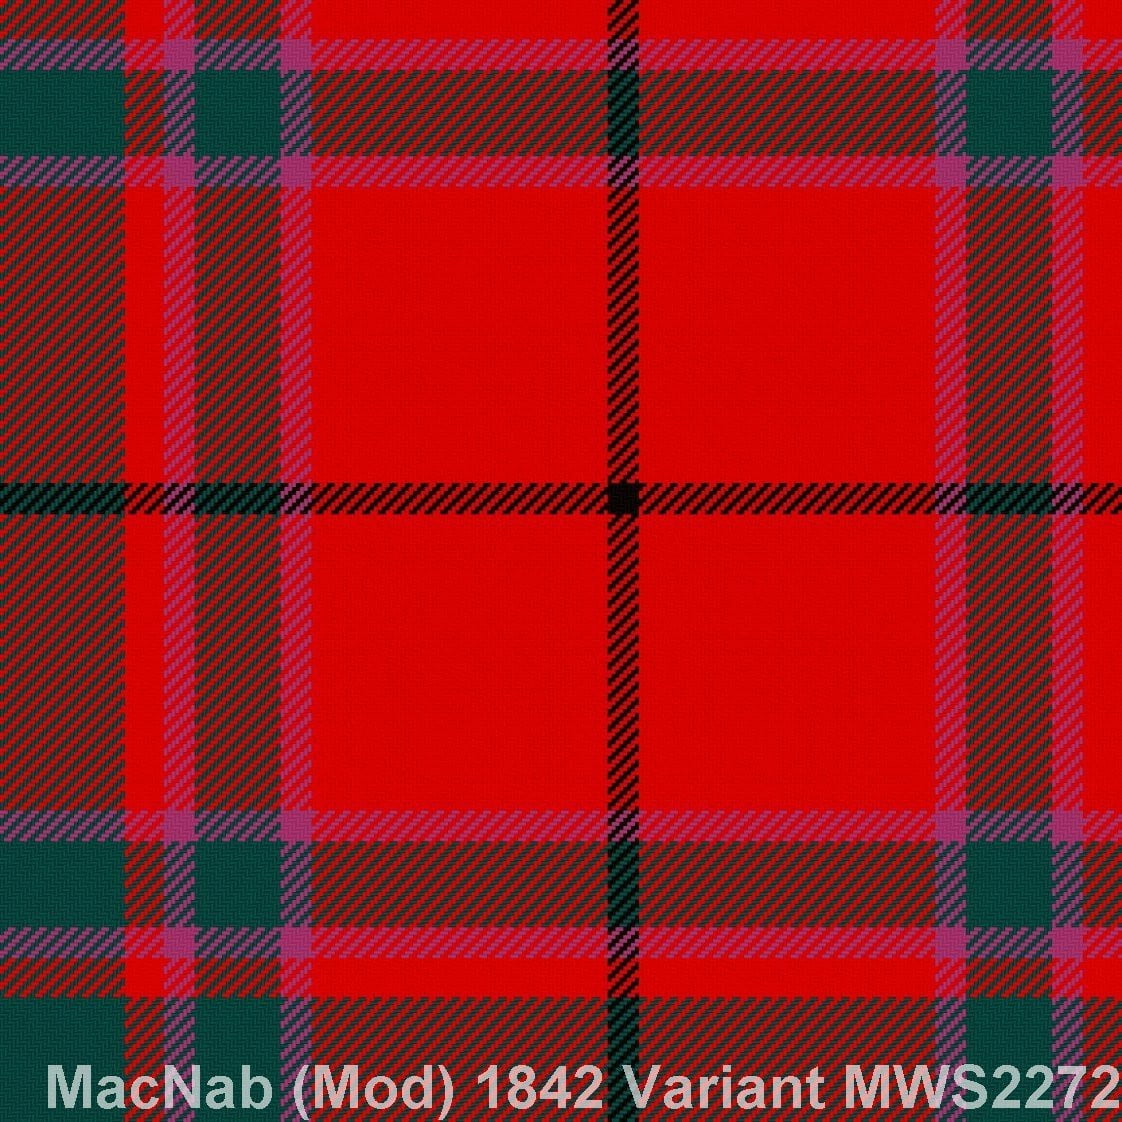 MacNab Modern 1842 Variant